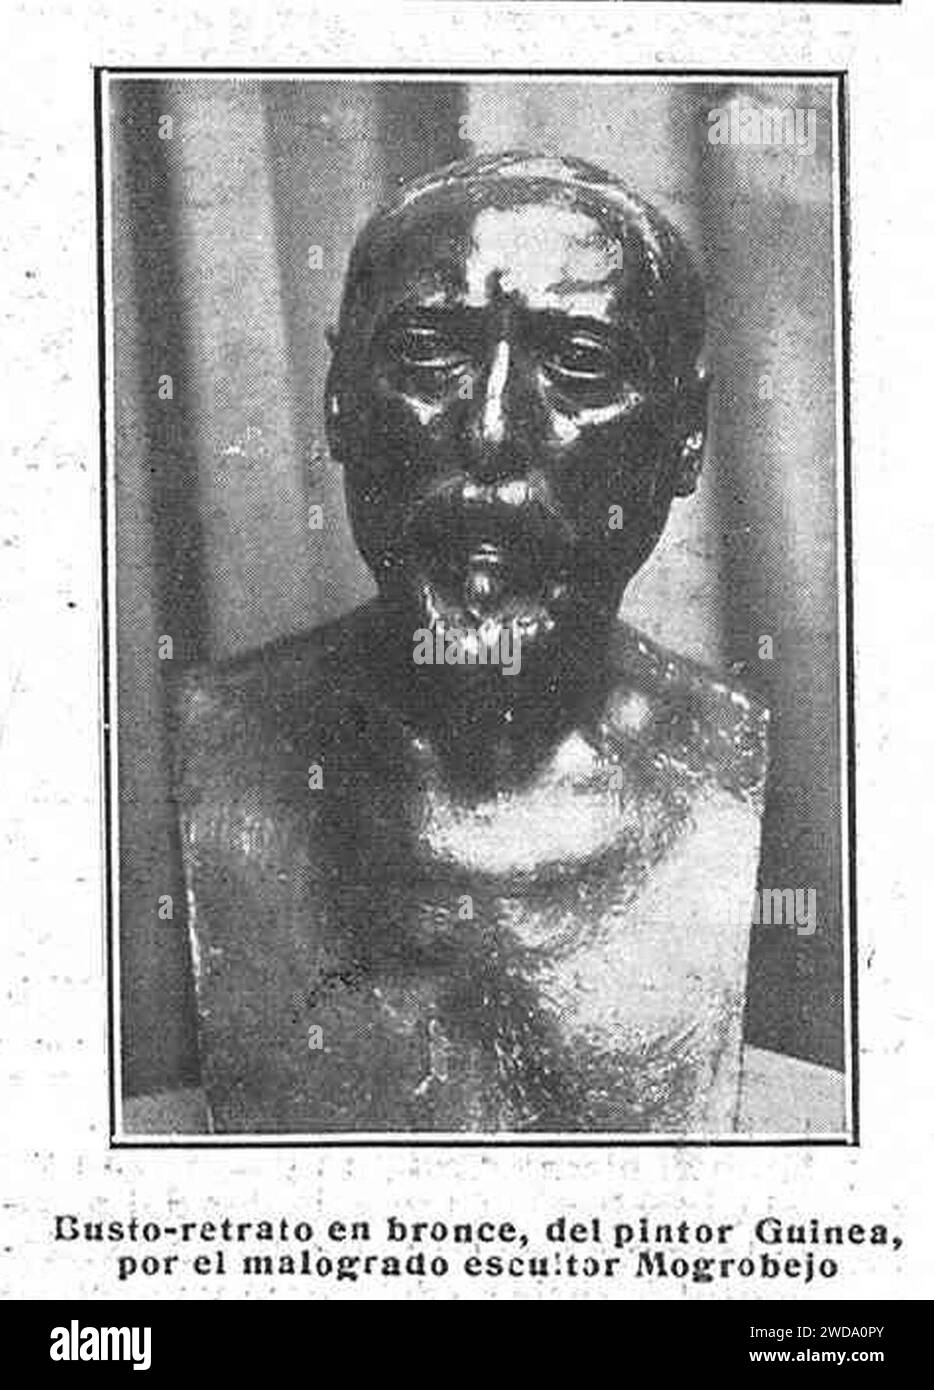 1916-11-18, La Esfera, Busto-retrato del pintor Guinea, por el malogrado escultor Mogrobejo. Stock Photo